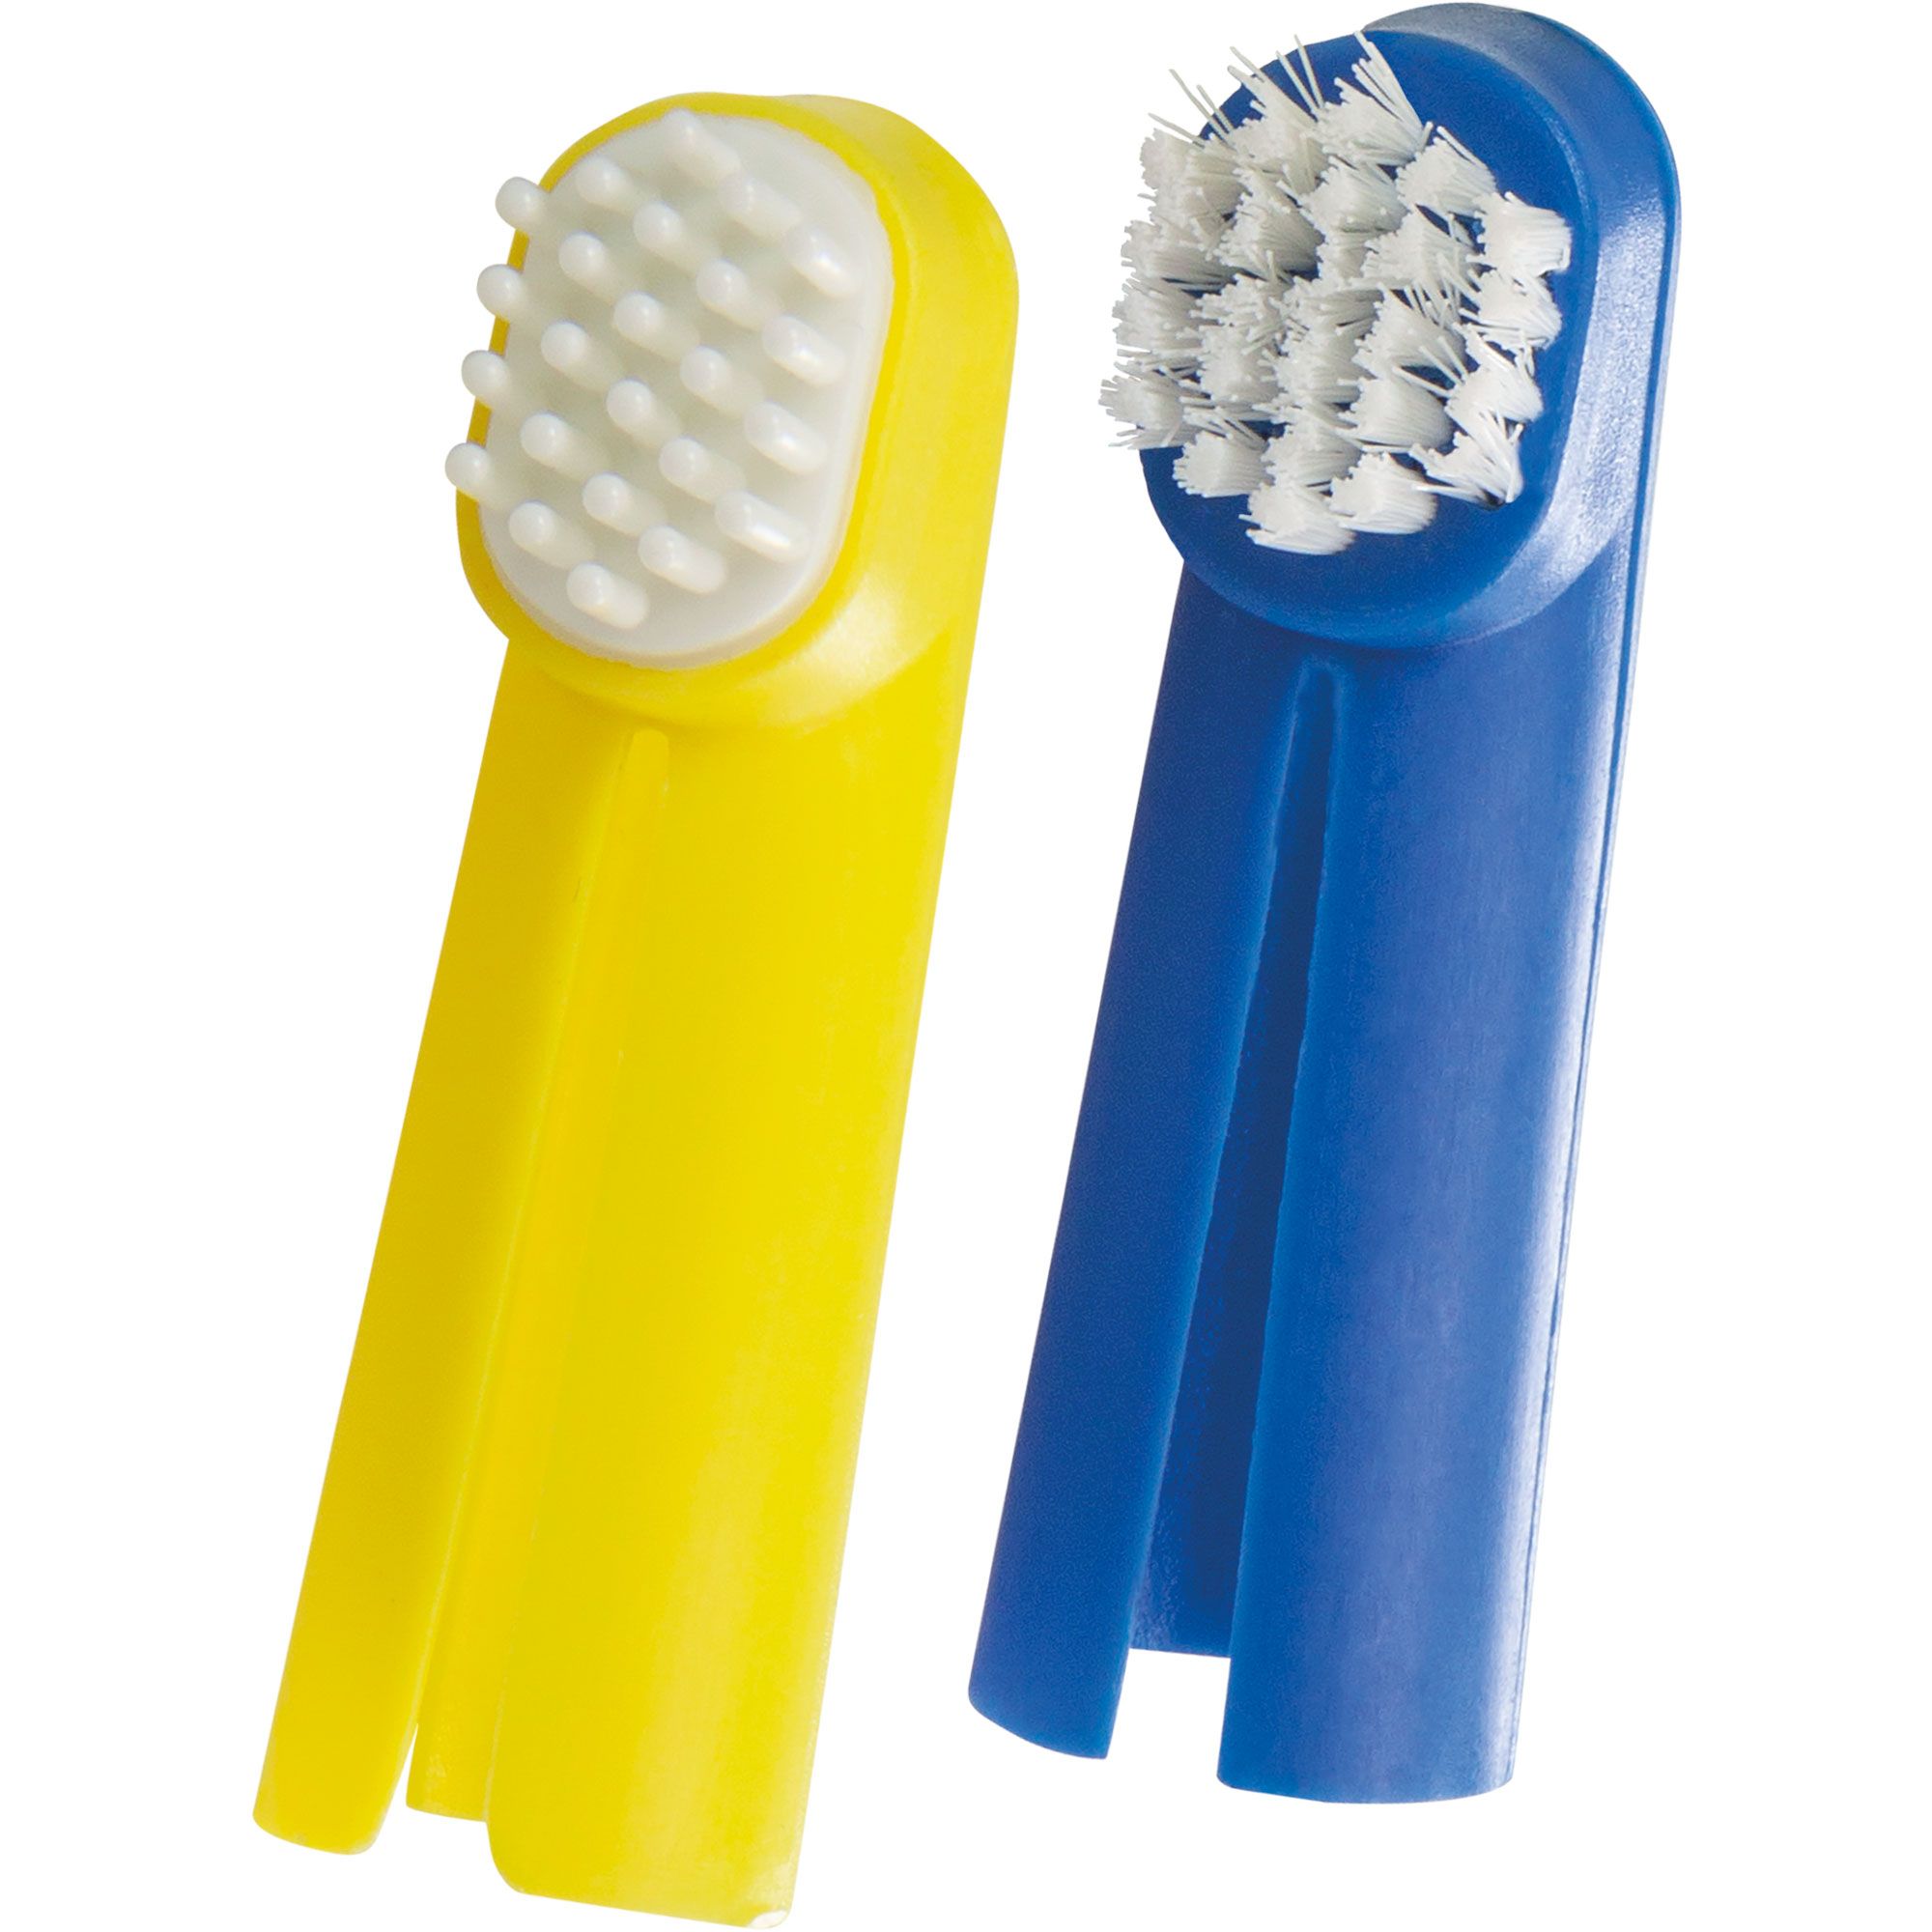 Finger Zahnbürsten Set Hundezahnbürste - Zahnbürste für den Hund